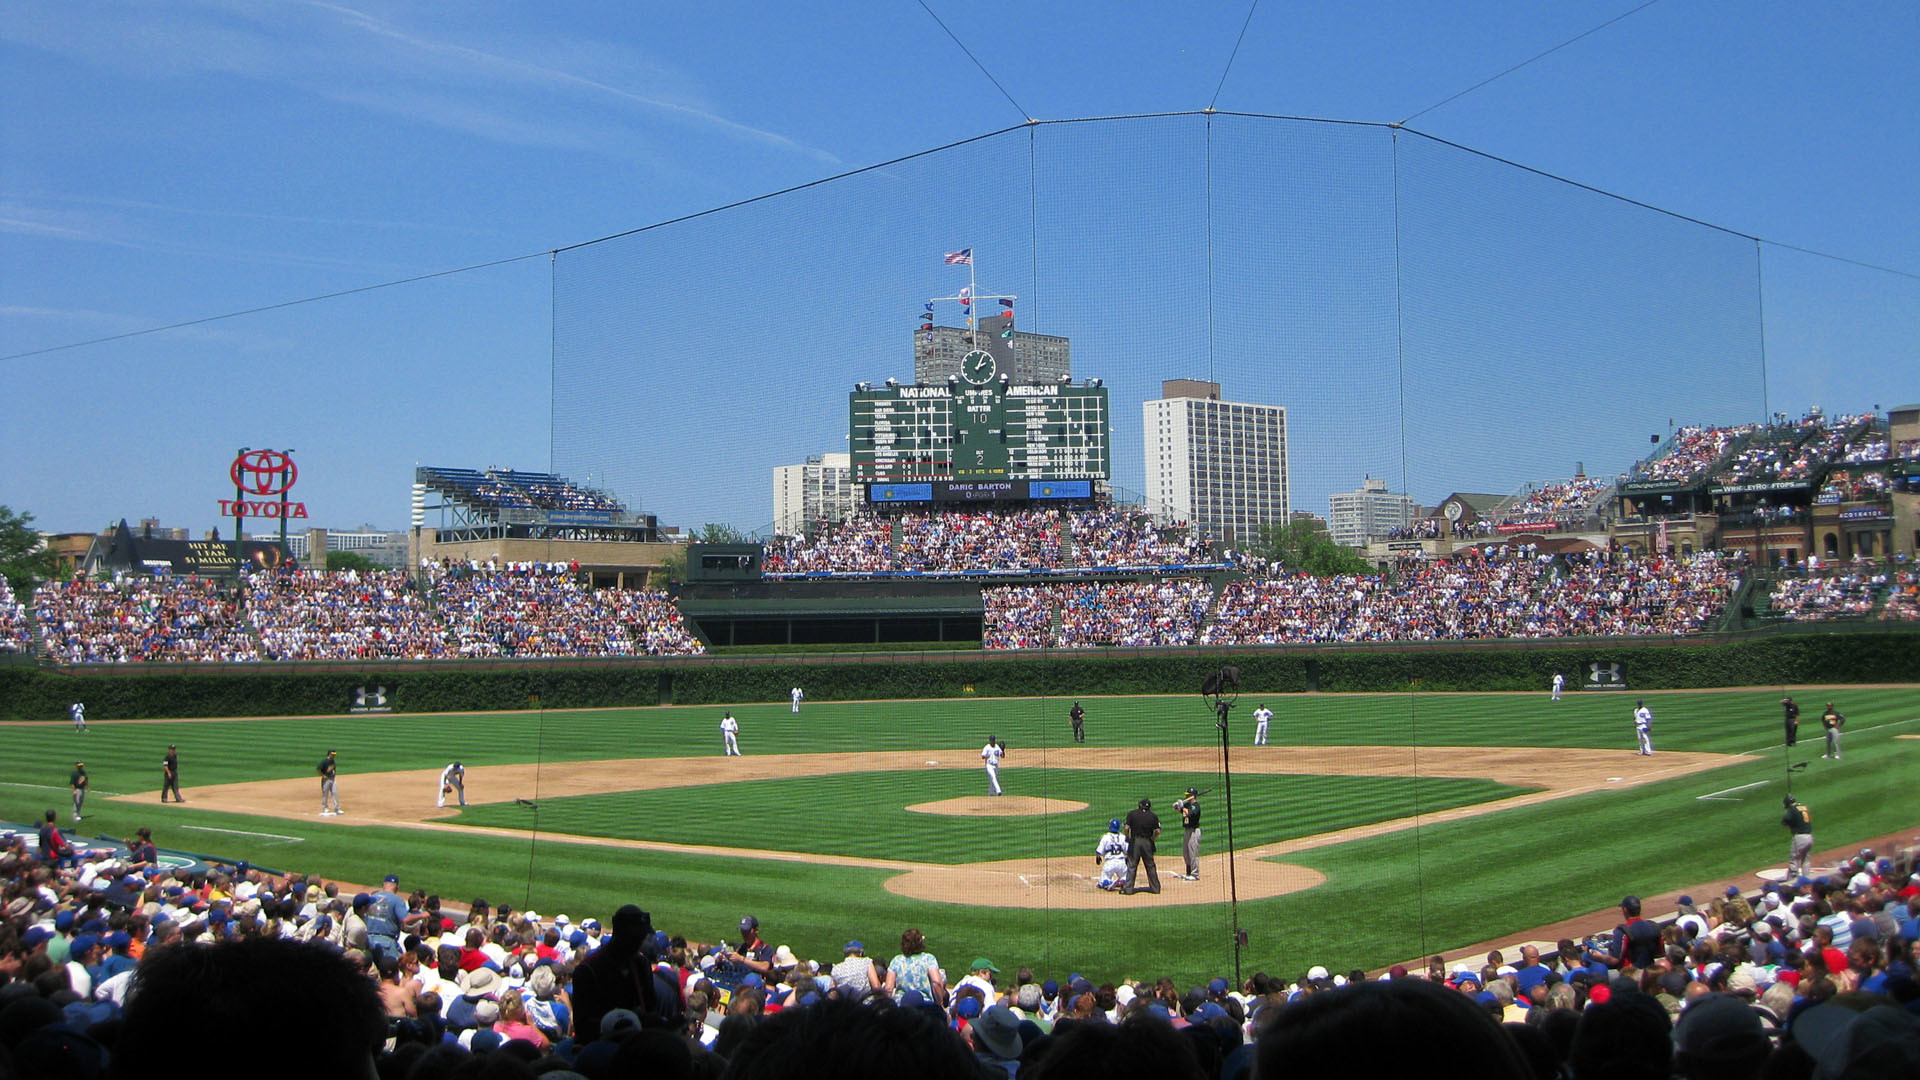 fond d'écran gratuit chicago cubs,stade,terrain de baseball,parc de baseball,foule,jour